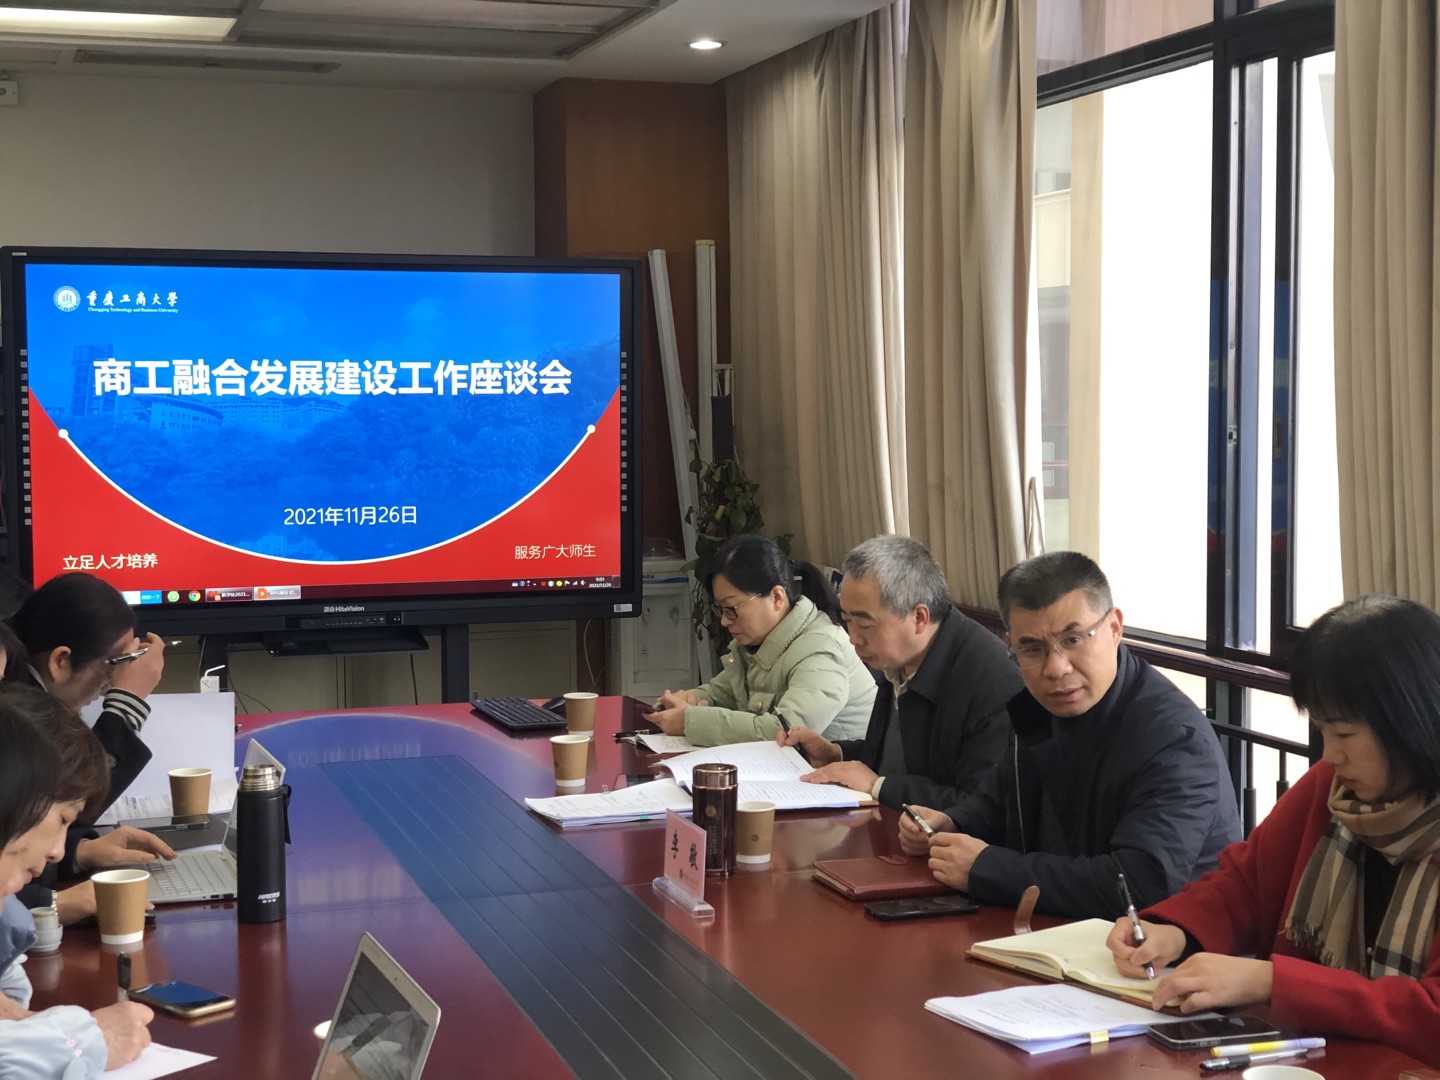 重庆工商大学召开商工融合发展建设座谈会